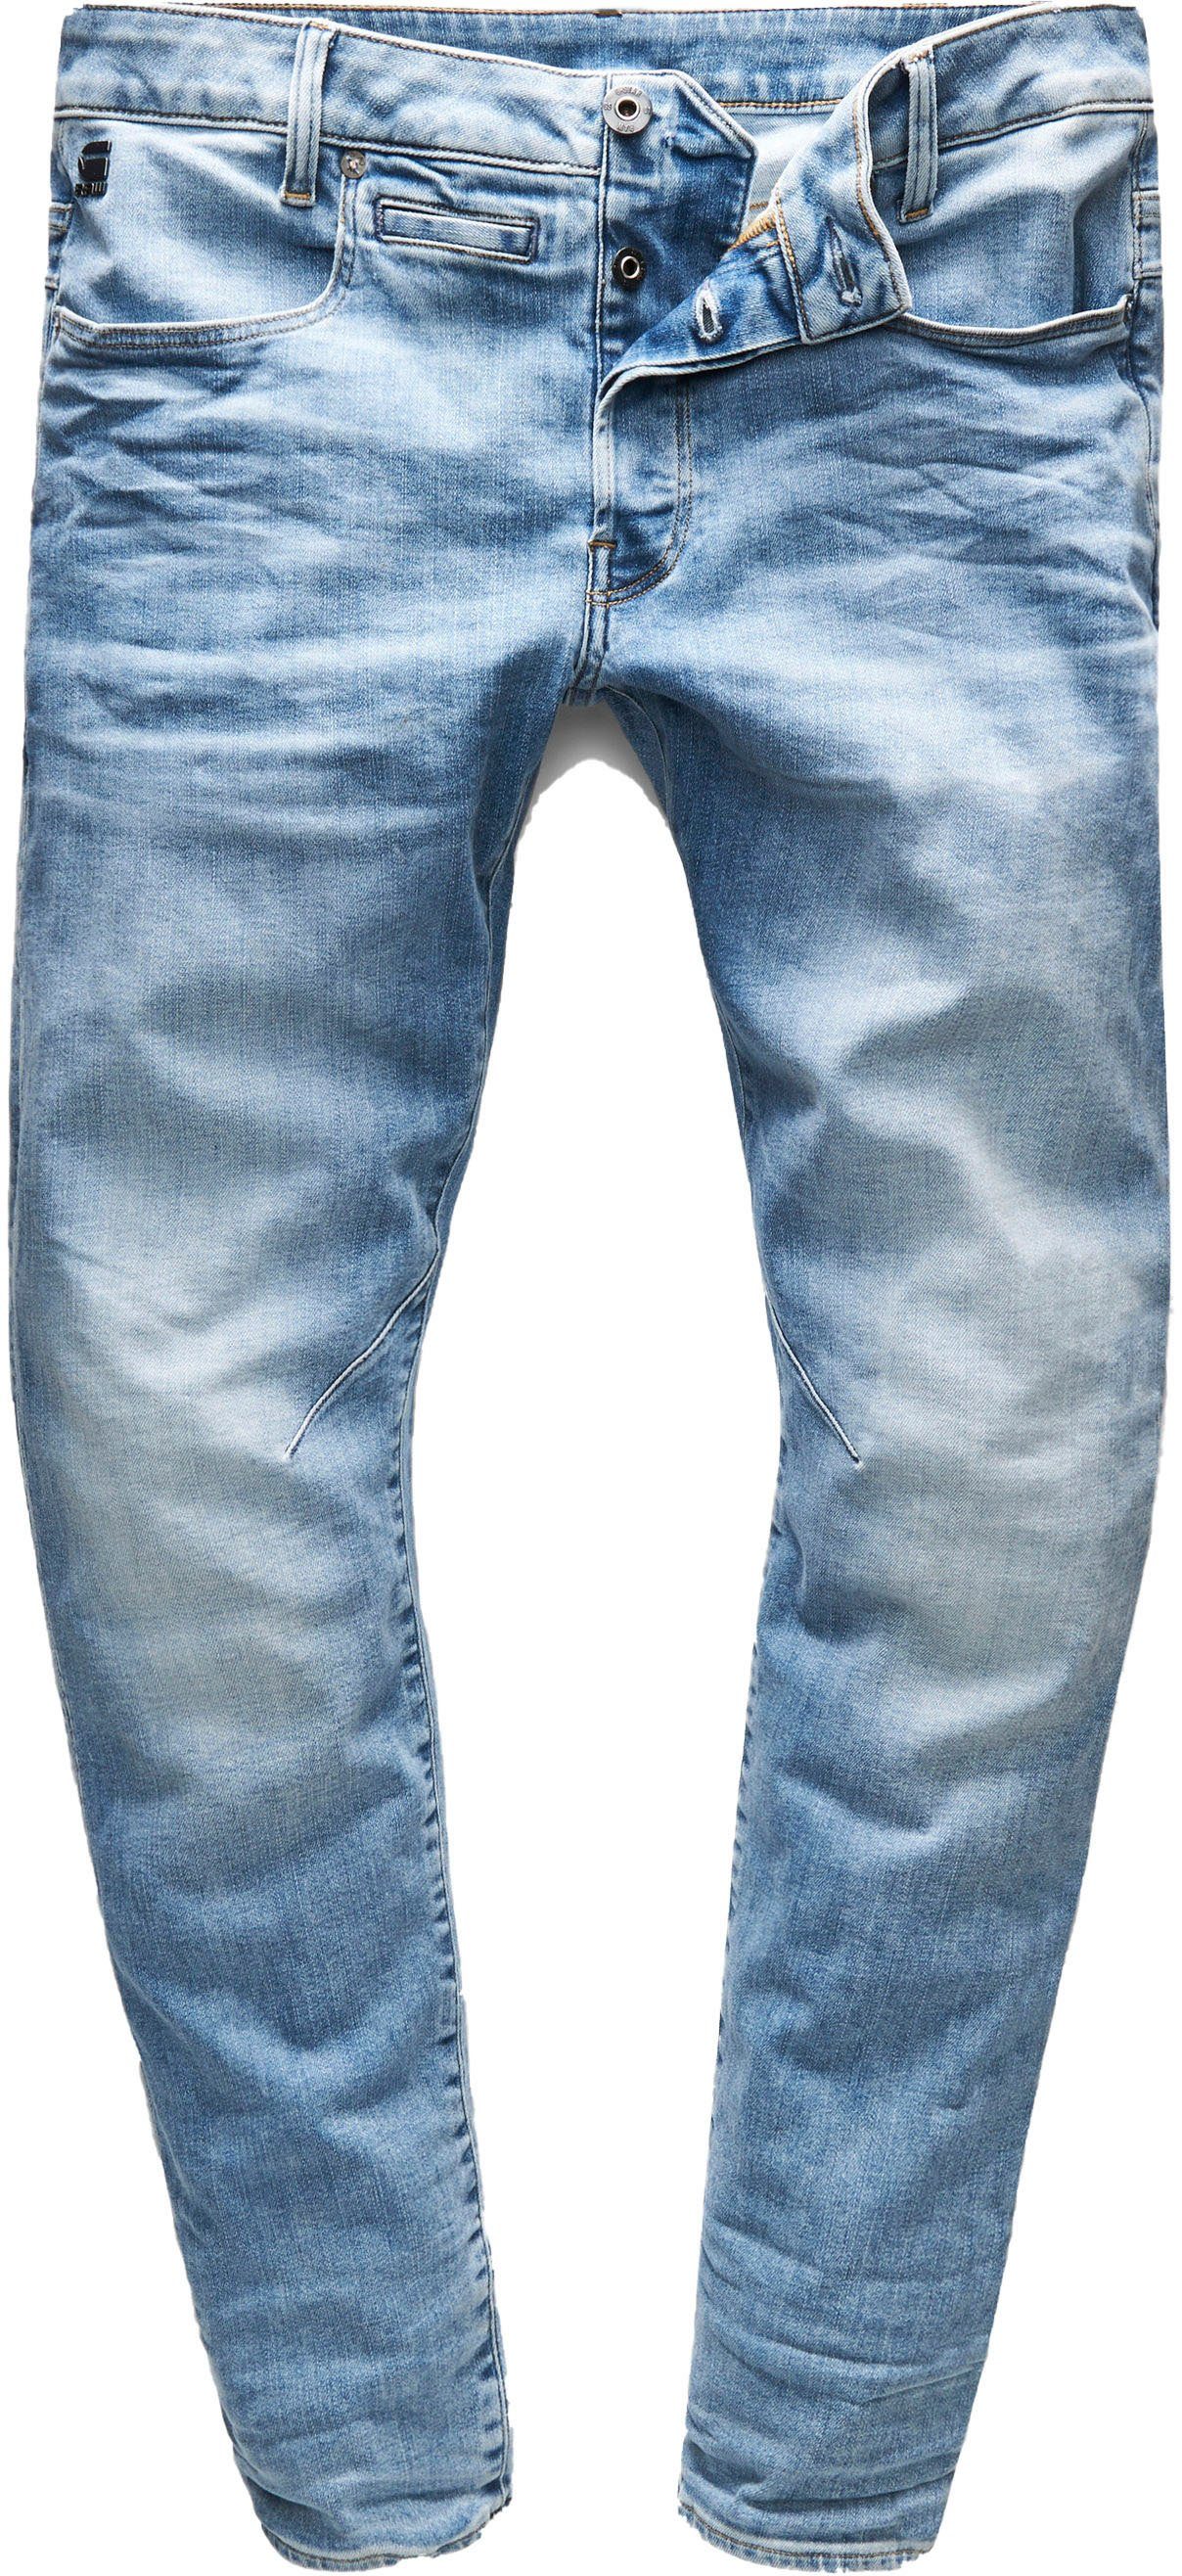 G-Star RAW Slim-fit-Jeans light-blue 3D D-Staq Fit Slim